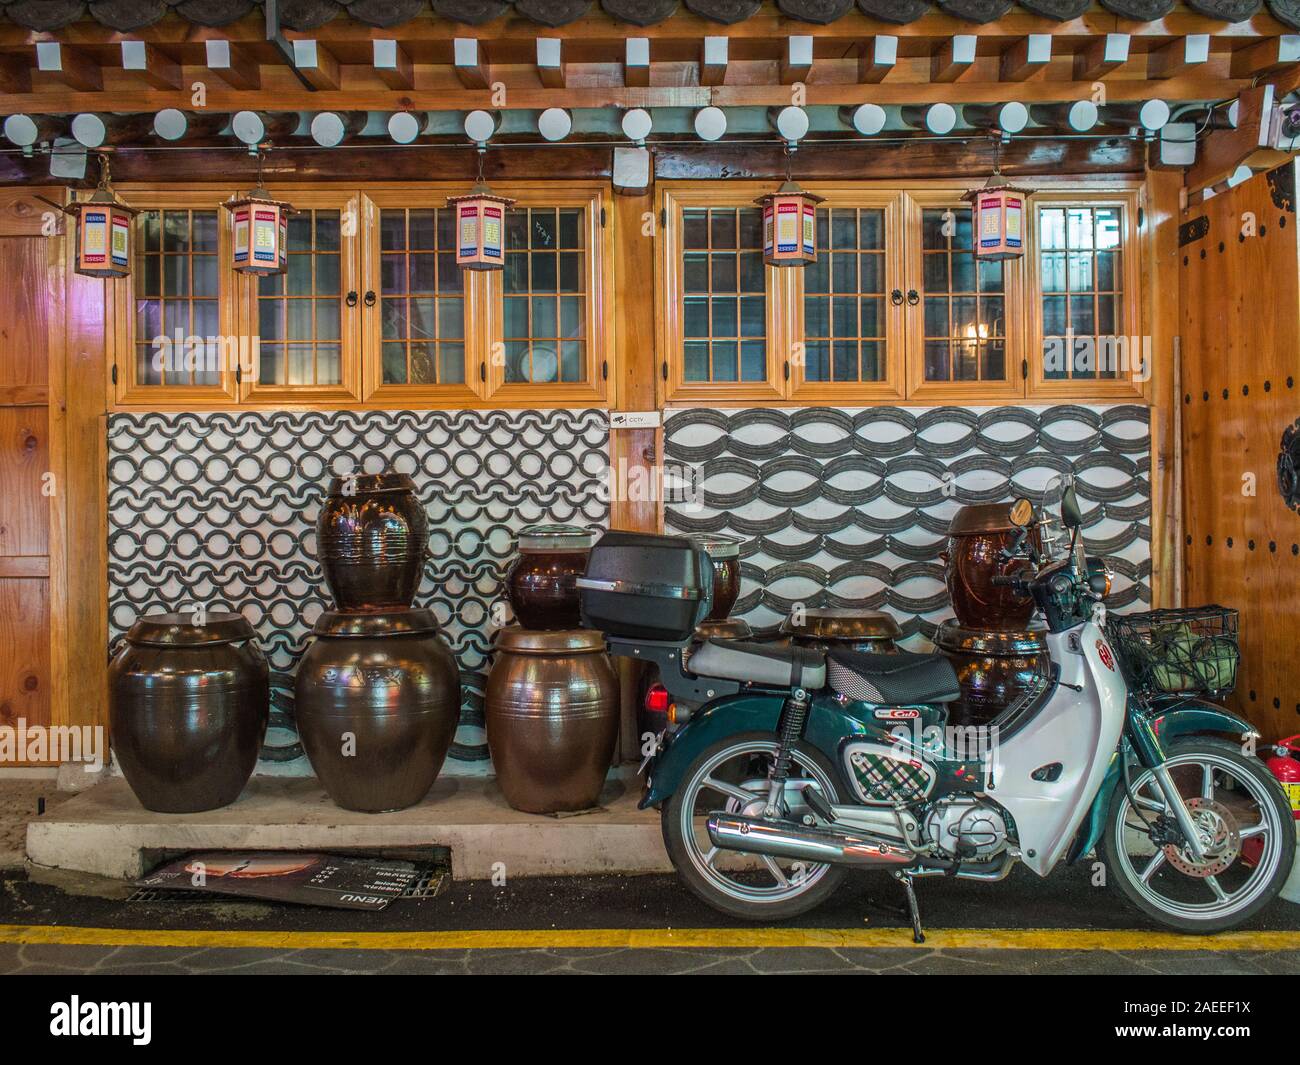 Motos Honda Super Cub, estacionado fuera de la tradicional casa hanok, pared de mosaico decorativo, decapado tinajas, Gyeongbokgung, Seúl, Corea del Sur Foto de stock